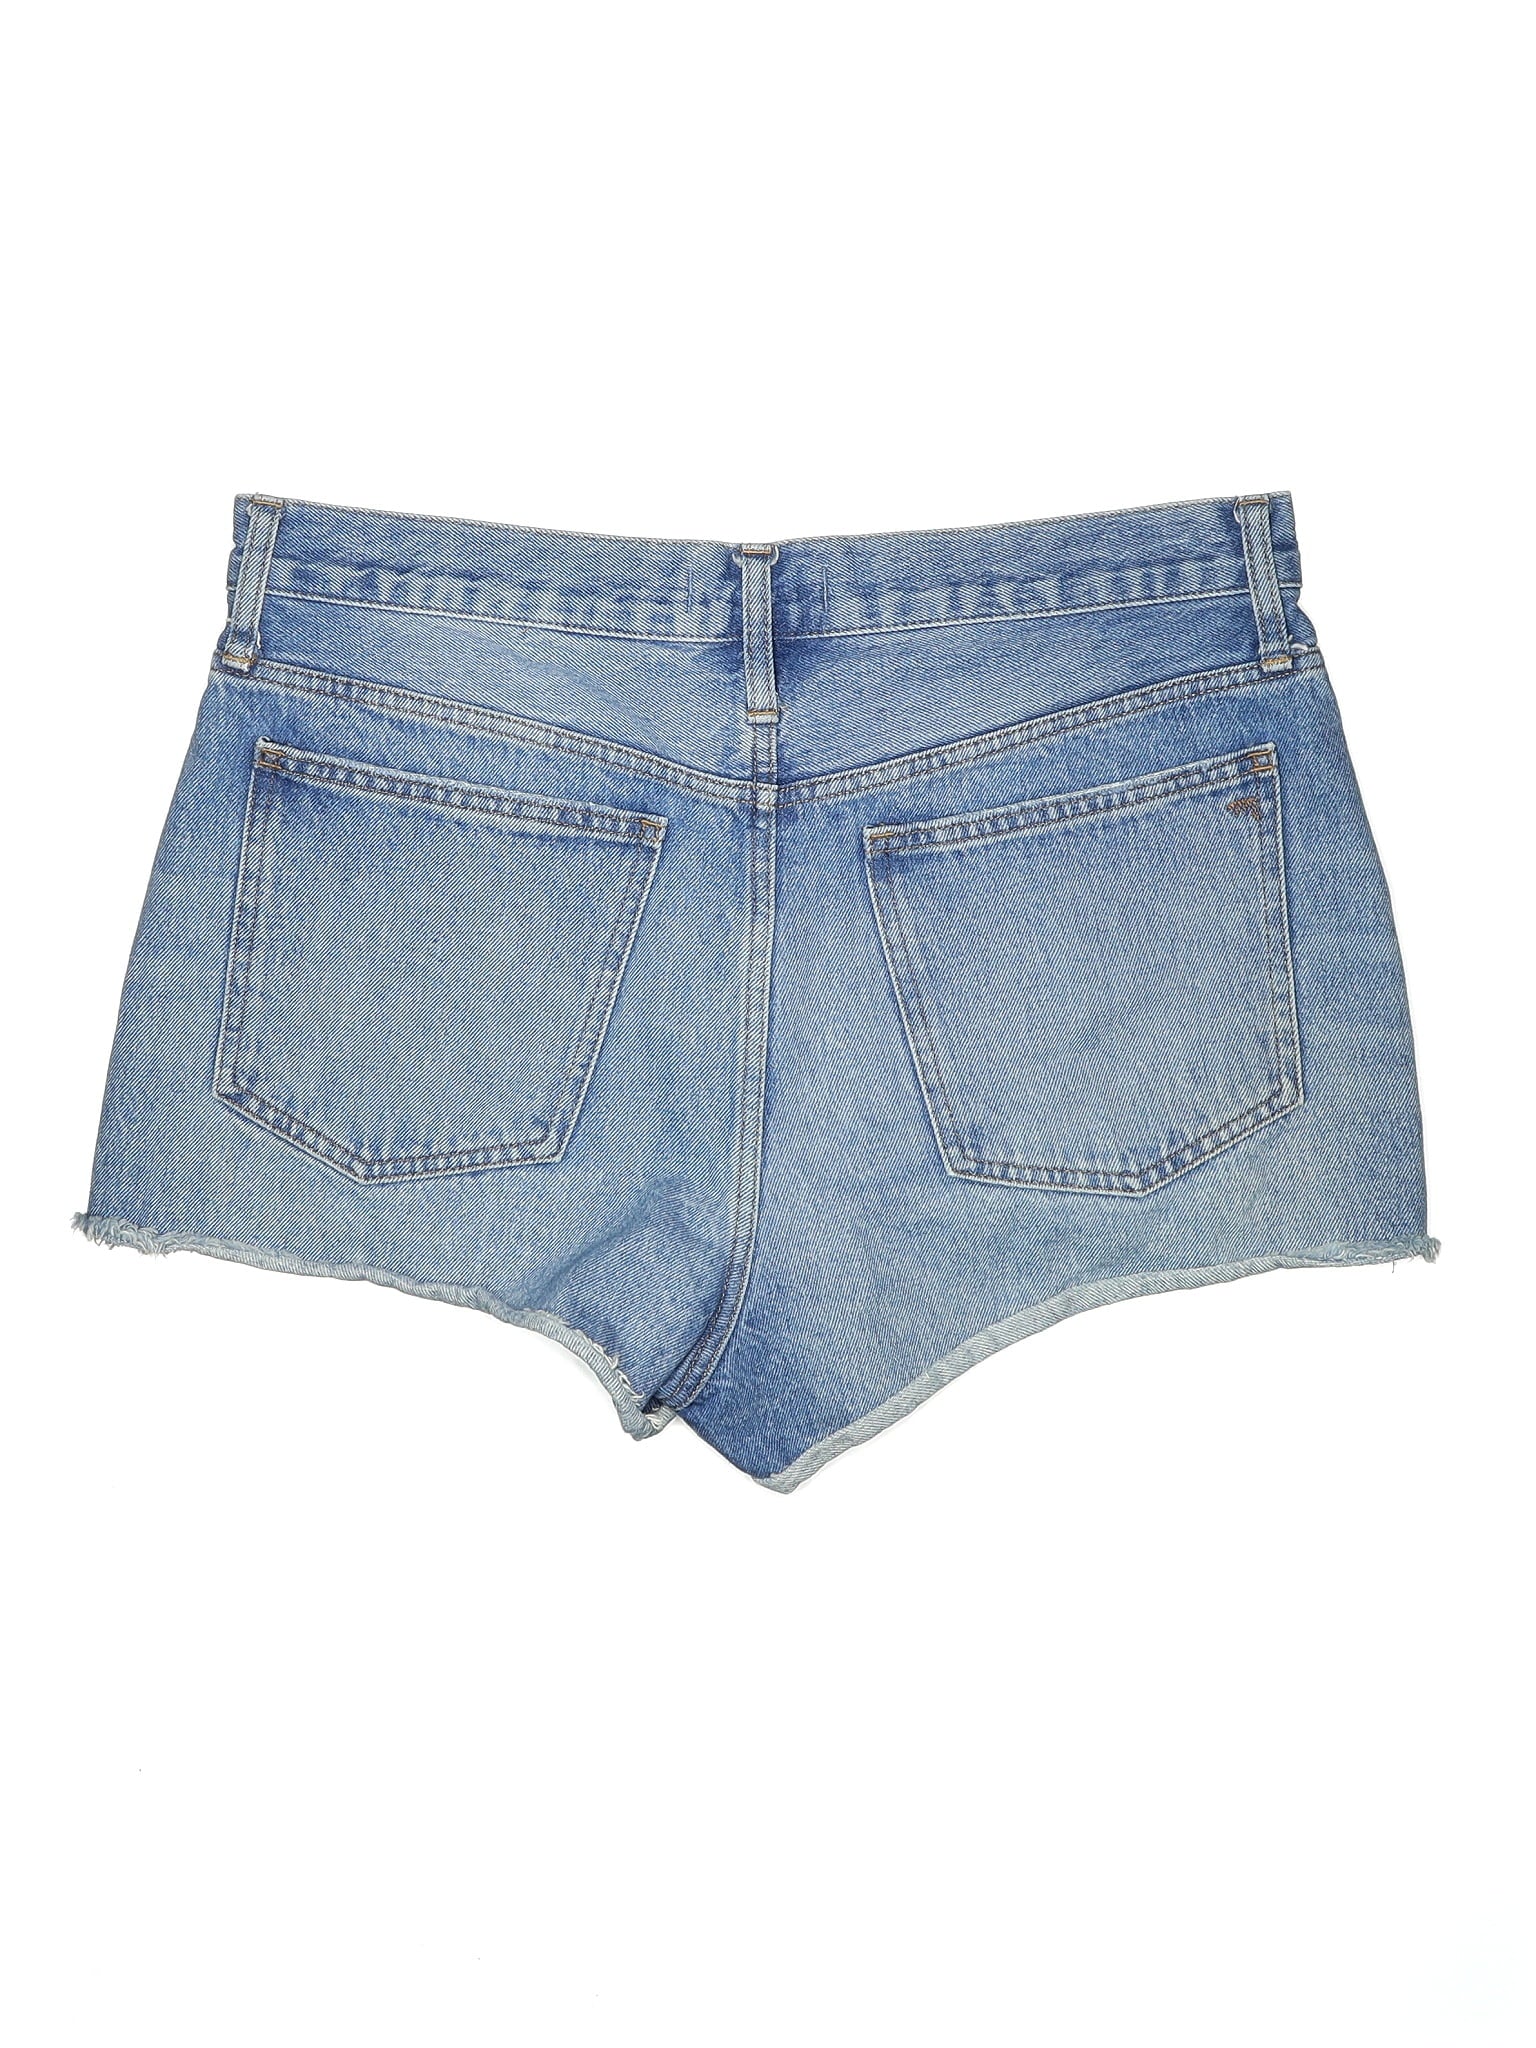 High-Rise Denim Shorts in Light Wash waist size - 28